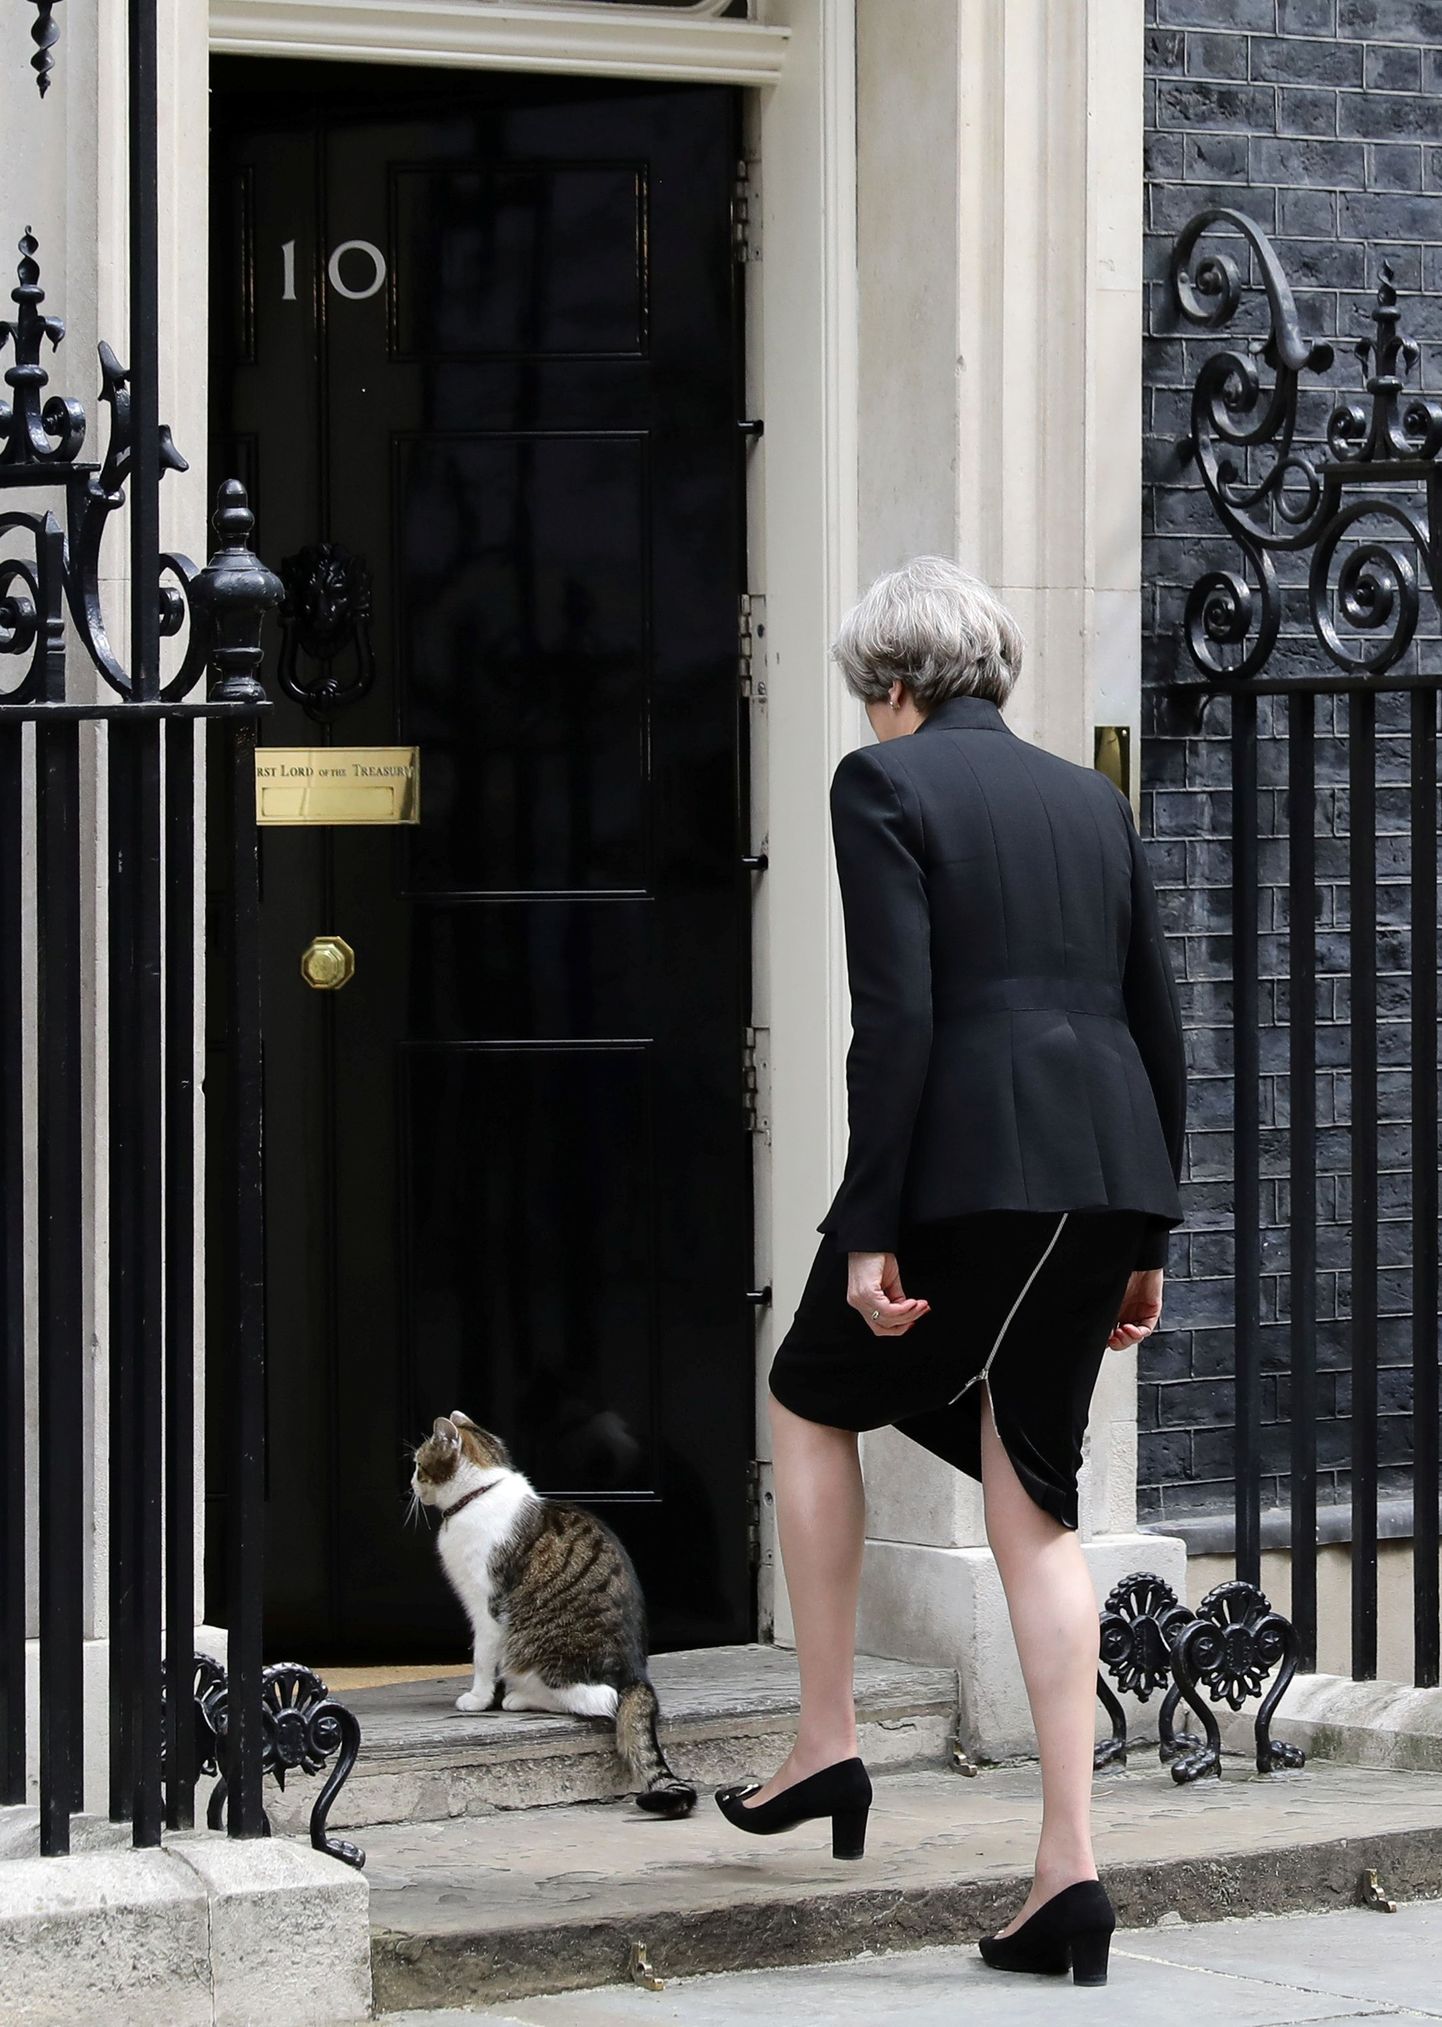 Briti peaminister Theresa May eile pärast kõnet tagasi peaministri residentsi naasmas.